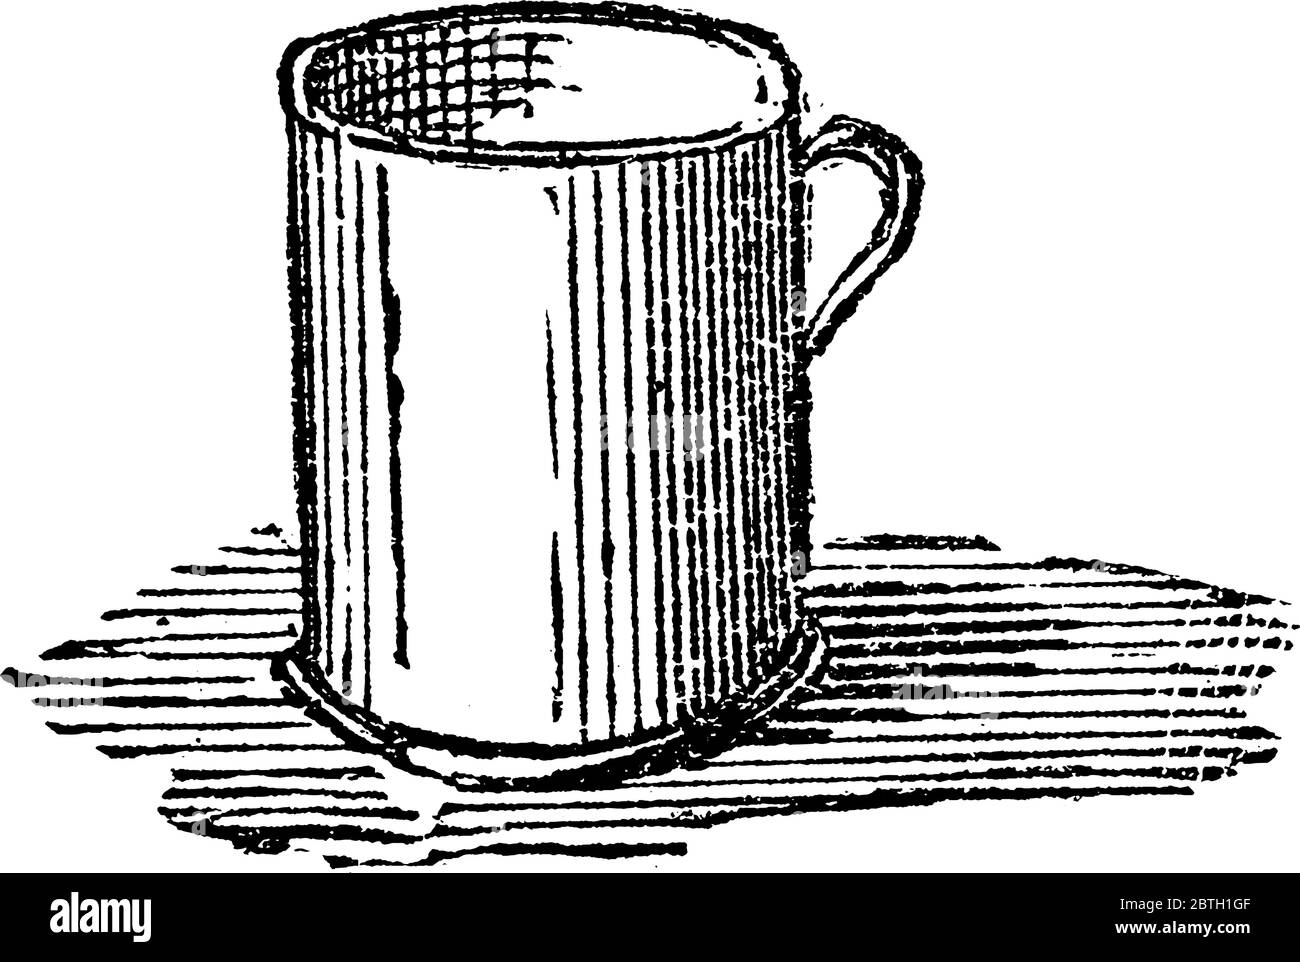 Eine Art irdenen Metallbecher, mit einem Griff versehen, für Trinkwasser, Tee oder Kaffee, Vintage-Linie Zeichnung oder Gravur Illustration verwendet Stock Vektor